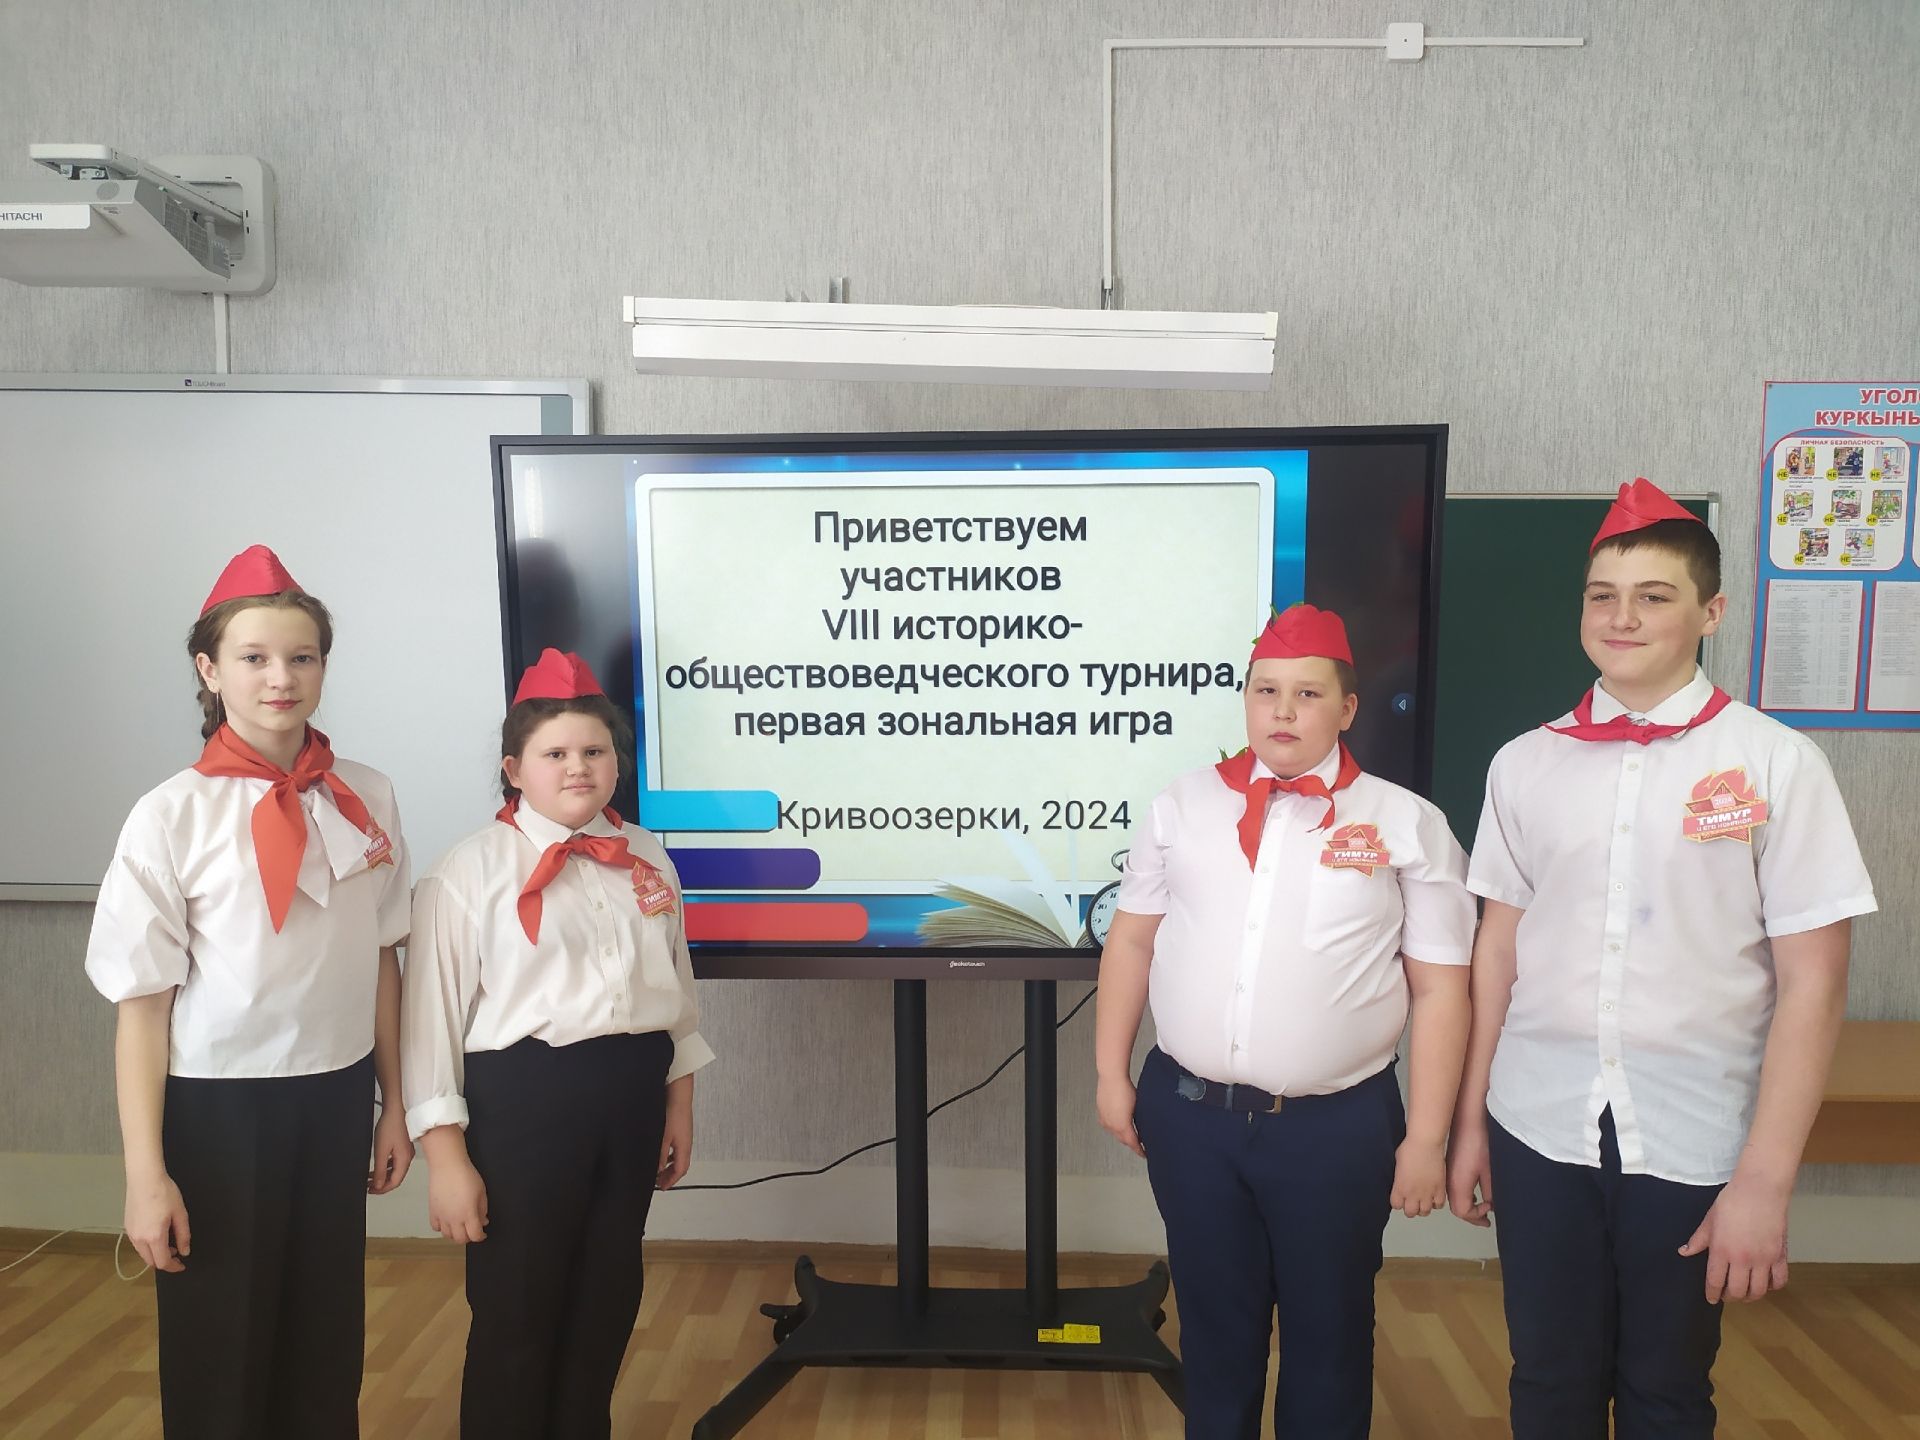 В Кривоозерской школе прошел историко-обществоведческий турнир